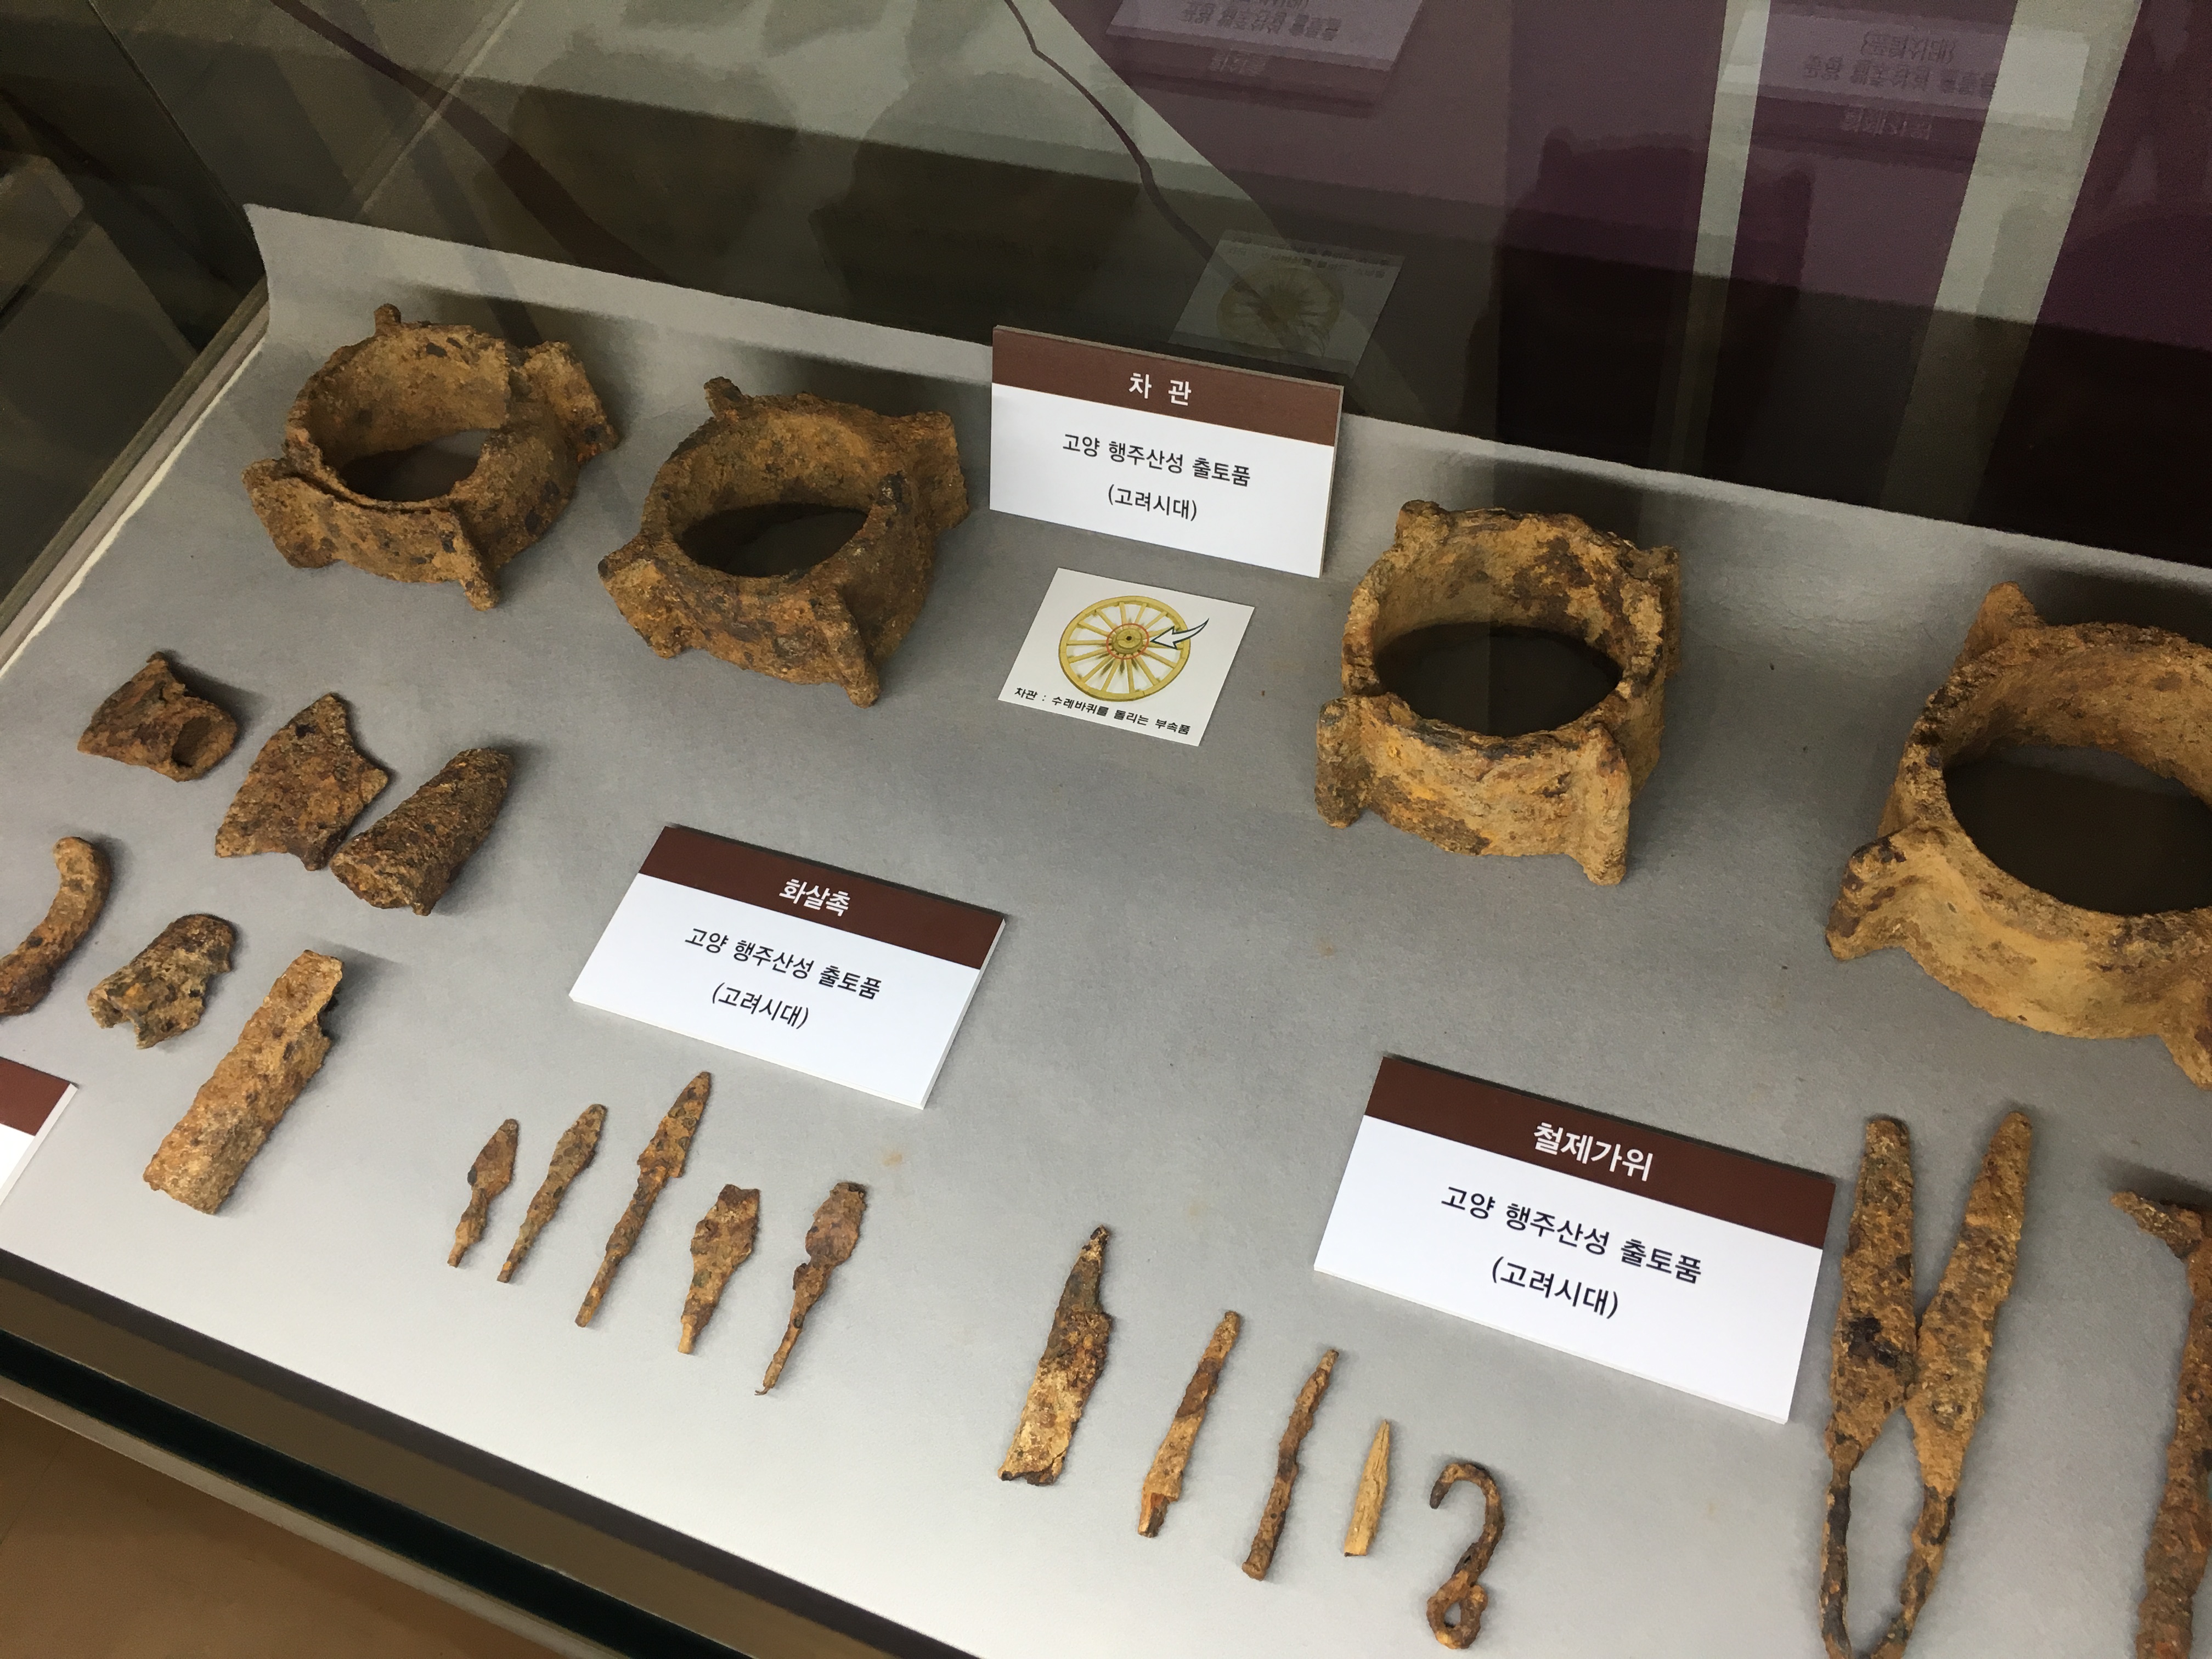 2017년 4월 행주산성에서 삼국시대 석성(石城) 발견